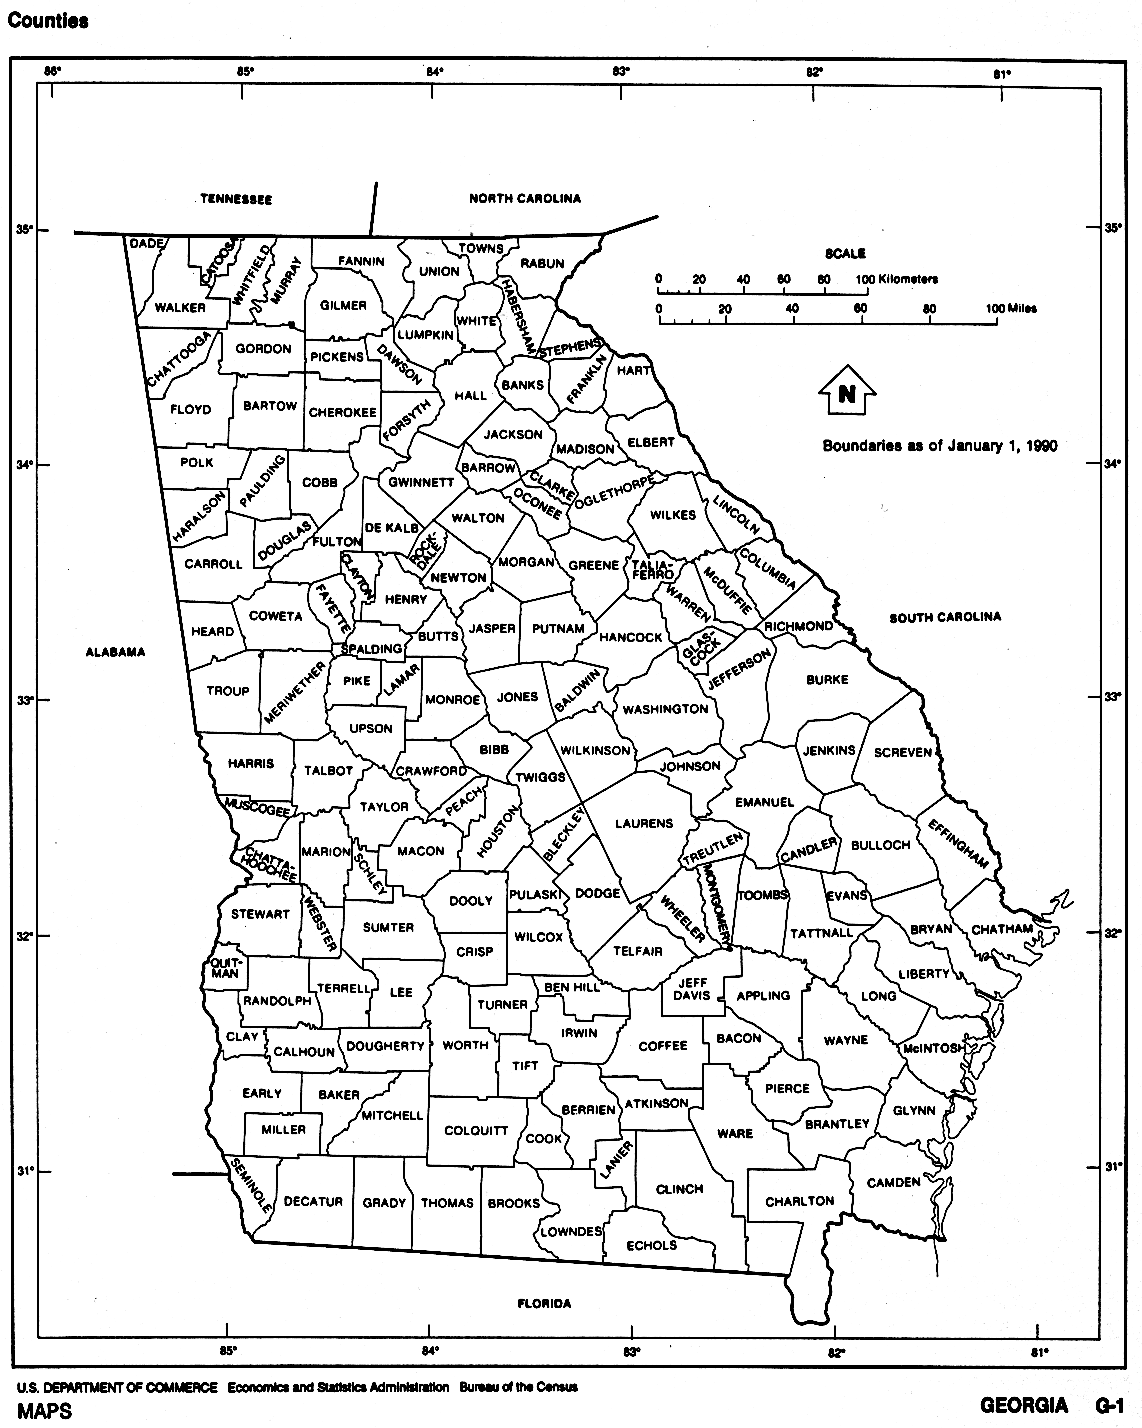  Maps of Georgia. Georgia (outline map) U.S. Bureau of the Census 1990 (174K) 